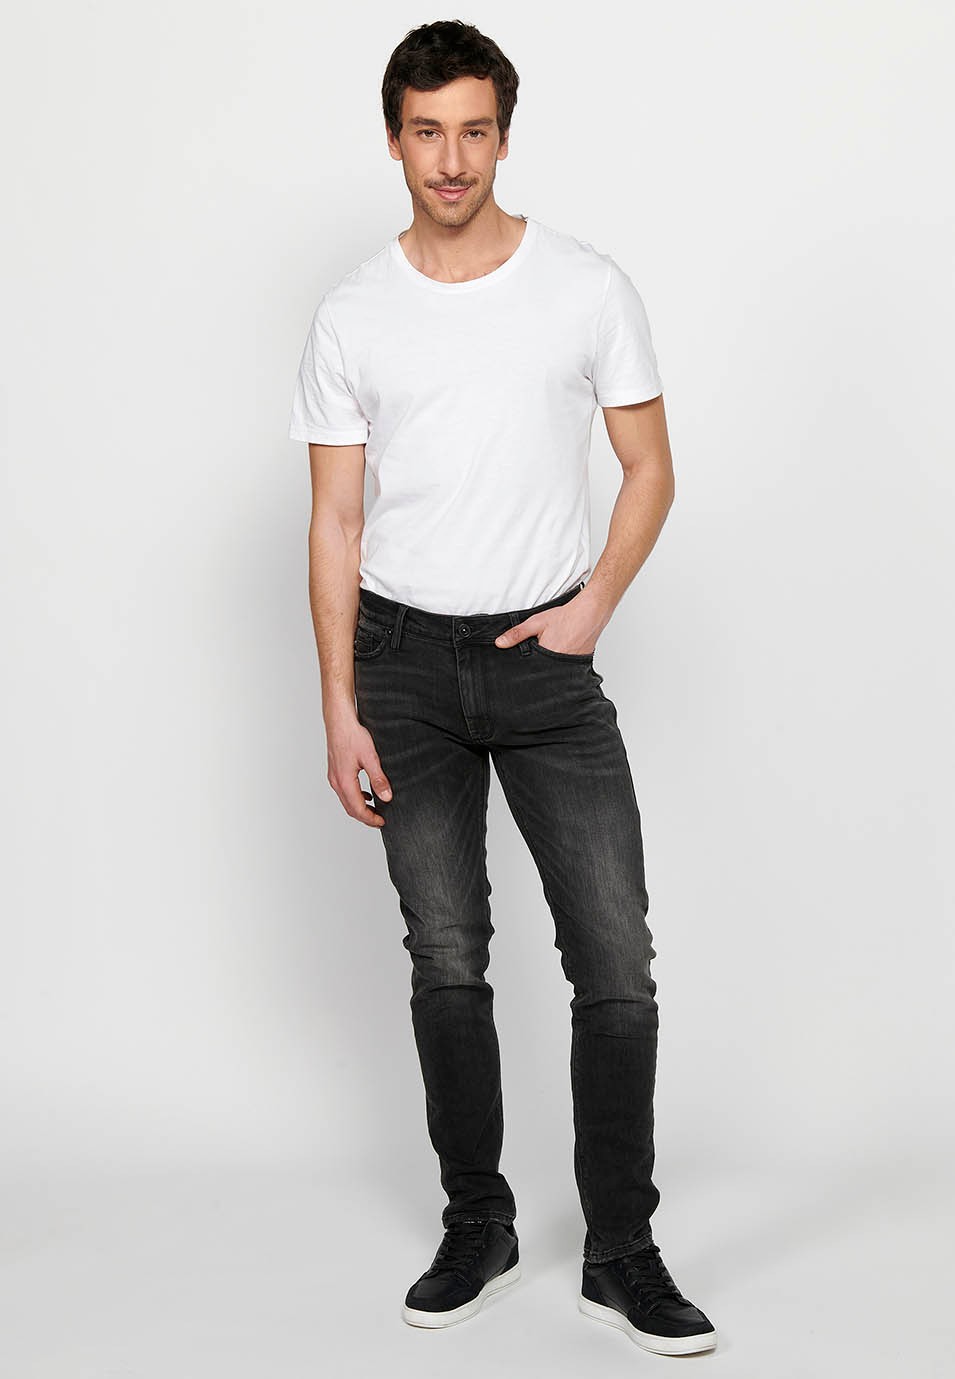 Pantalón jeans largo straigth regular fit con Cierre delantero con cremallera y botón de Color Denim Negro para Hombre